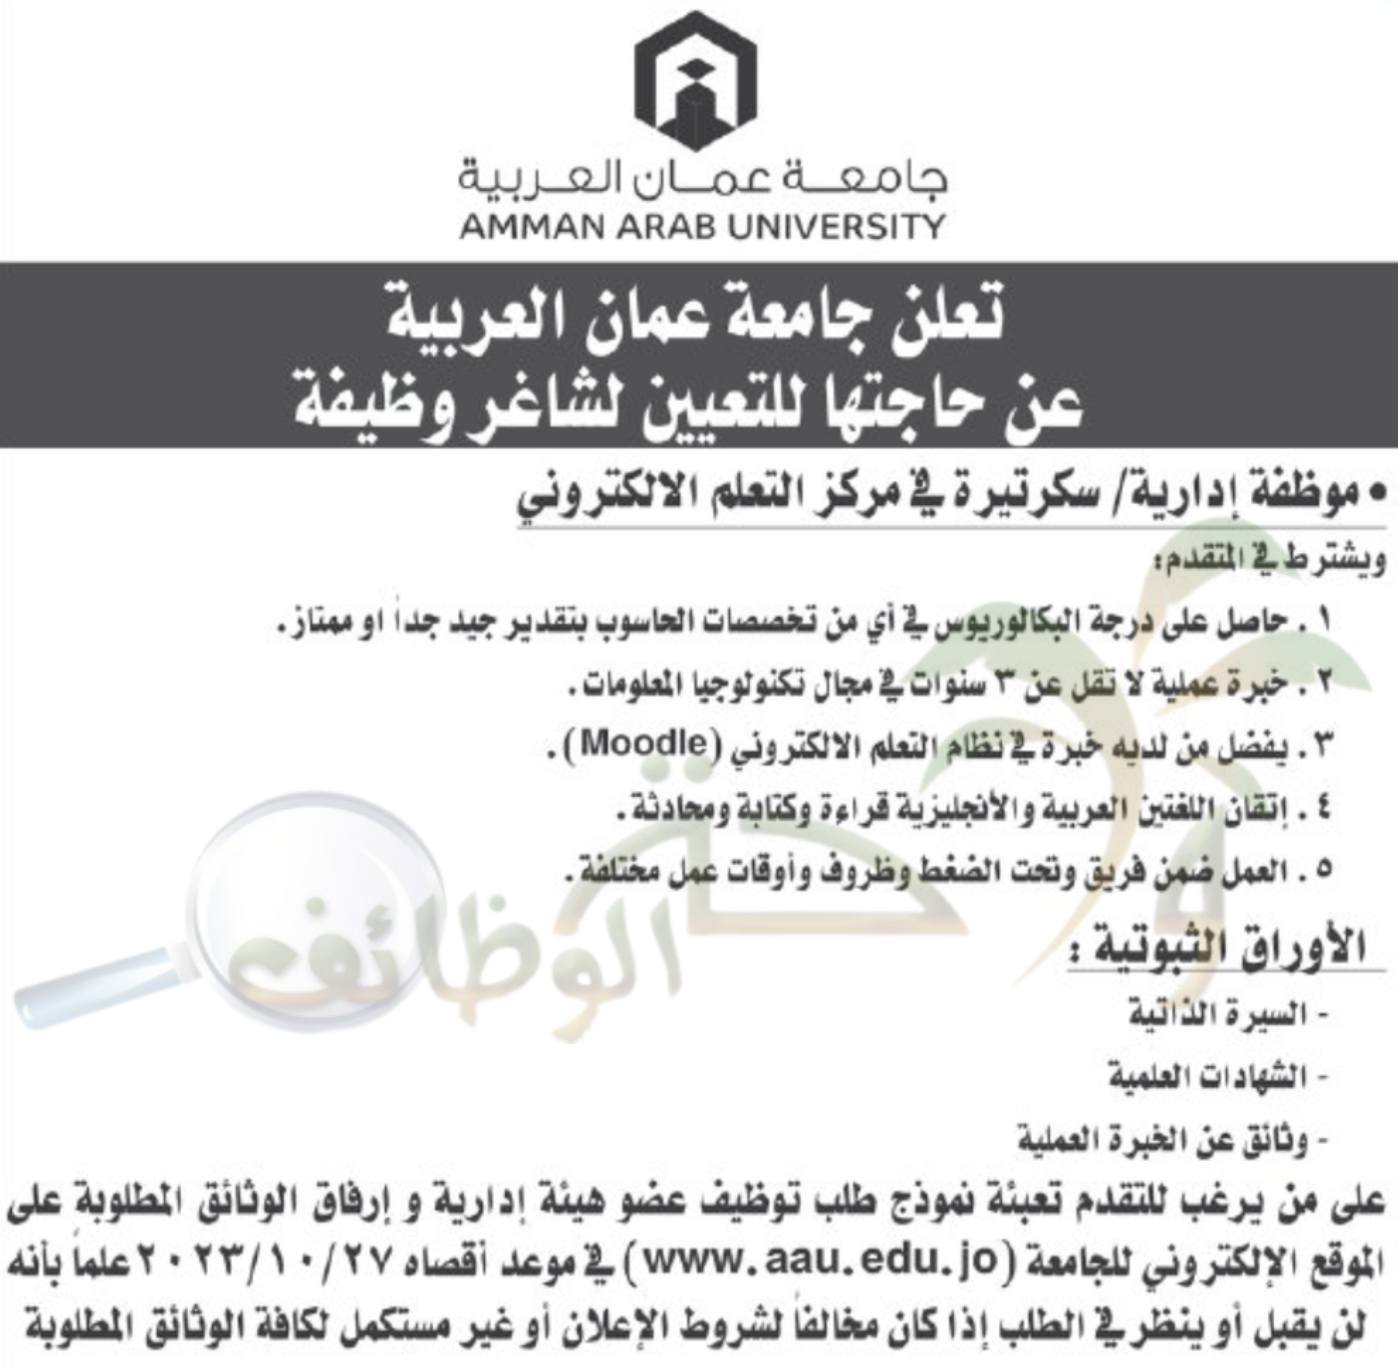 masatalemi|تعلن جامعة العربية عن حاجتها الى موظفة ادارية/سكرتيرة  .